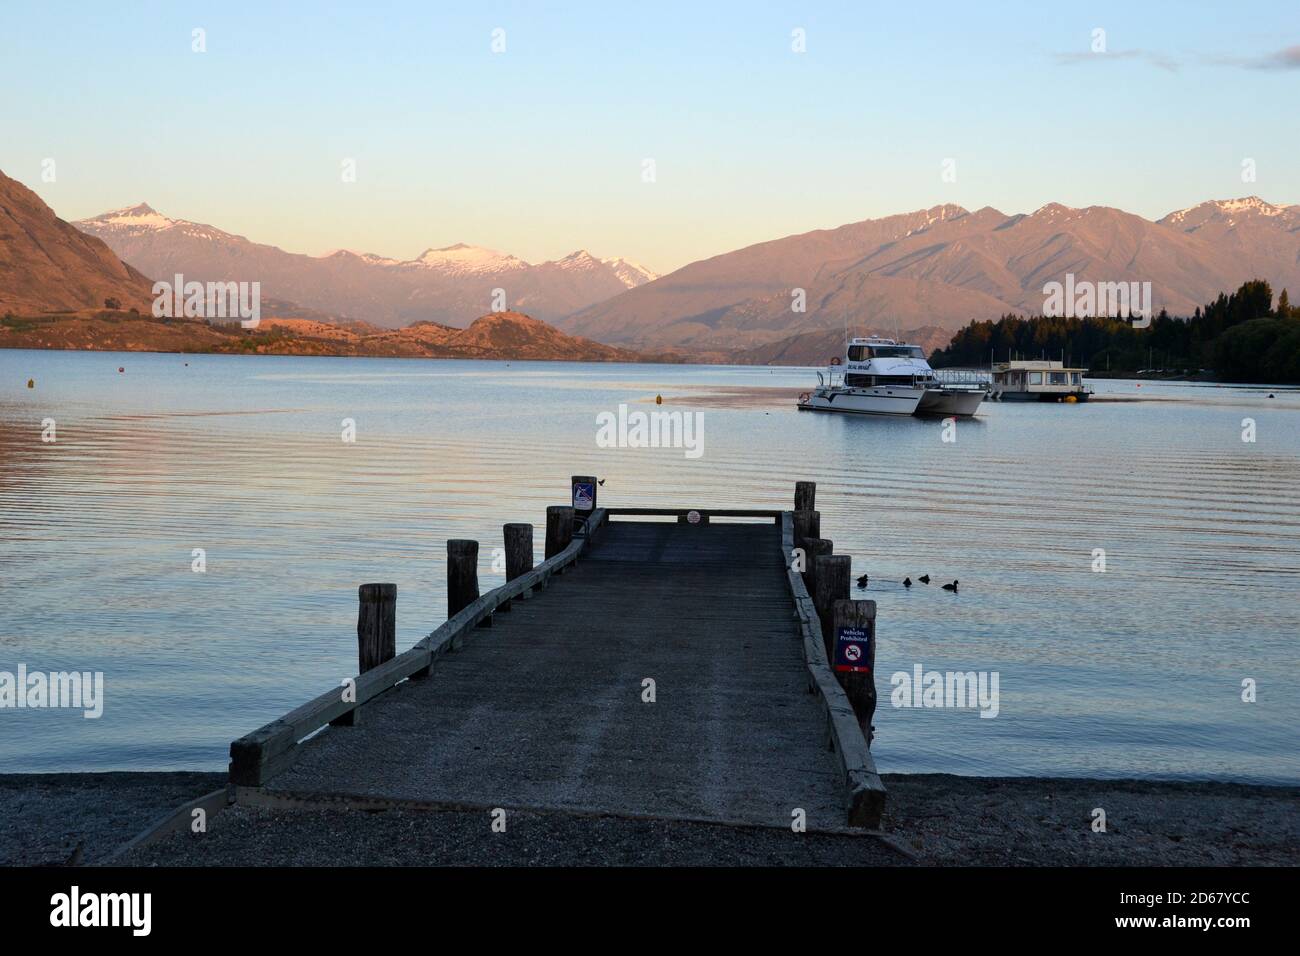 El lago Wanaka Boat Harbor al amanecer, Wanaka, Isla del Sur, Nueva Zelanda Foto de stock